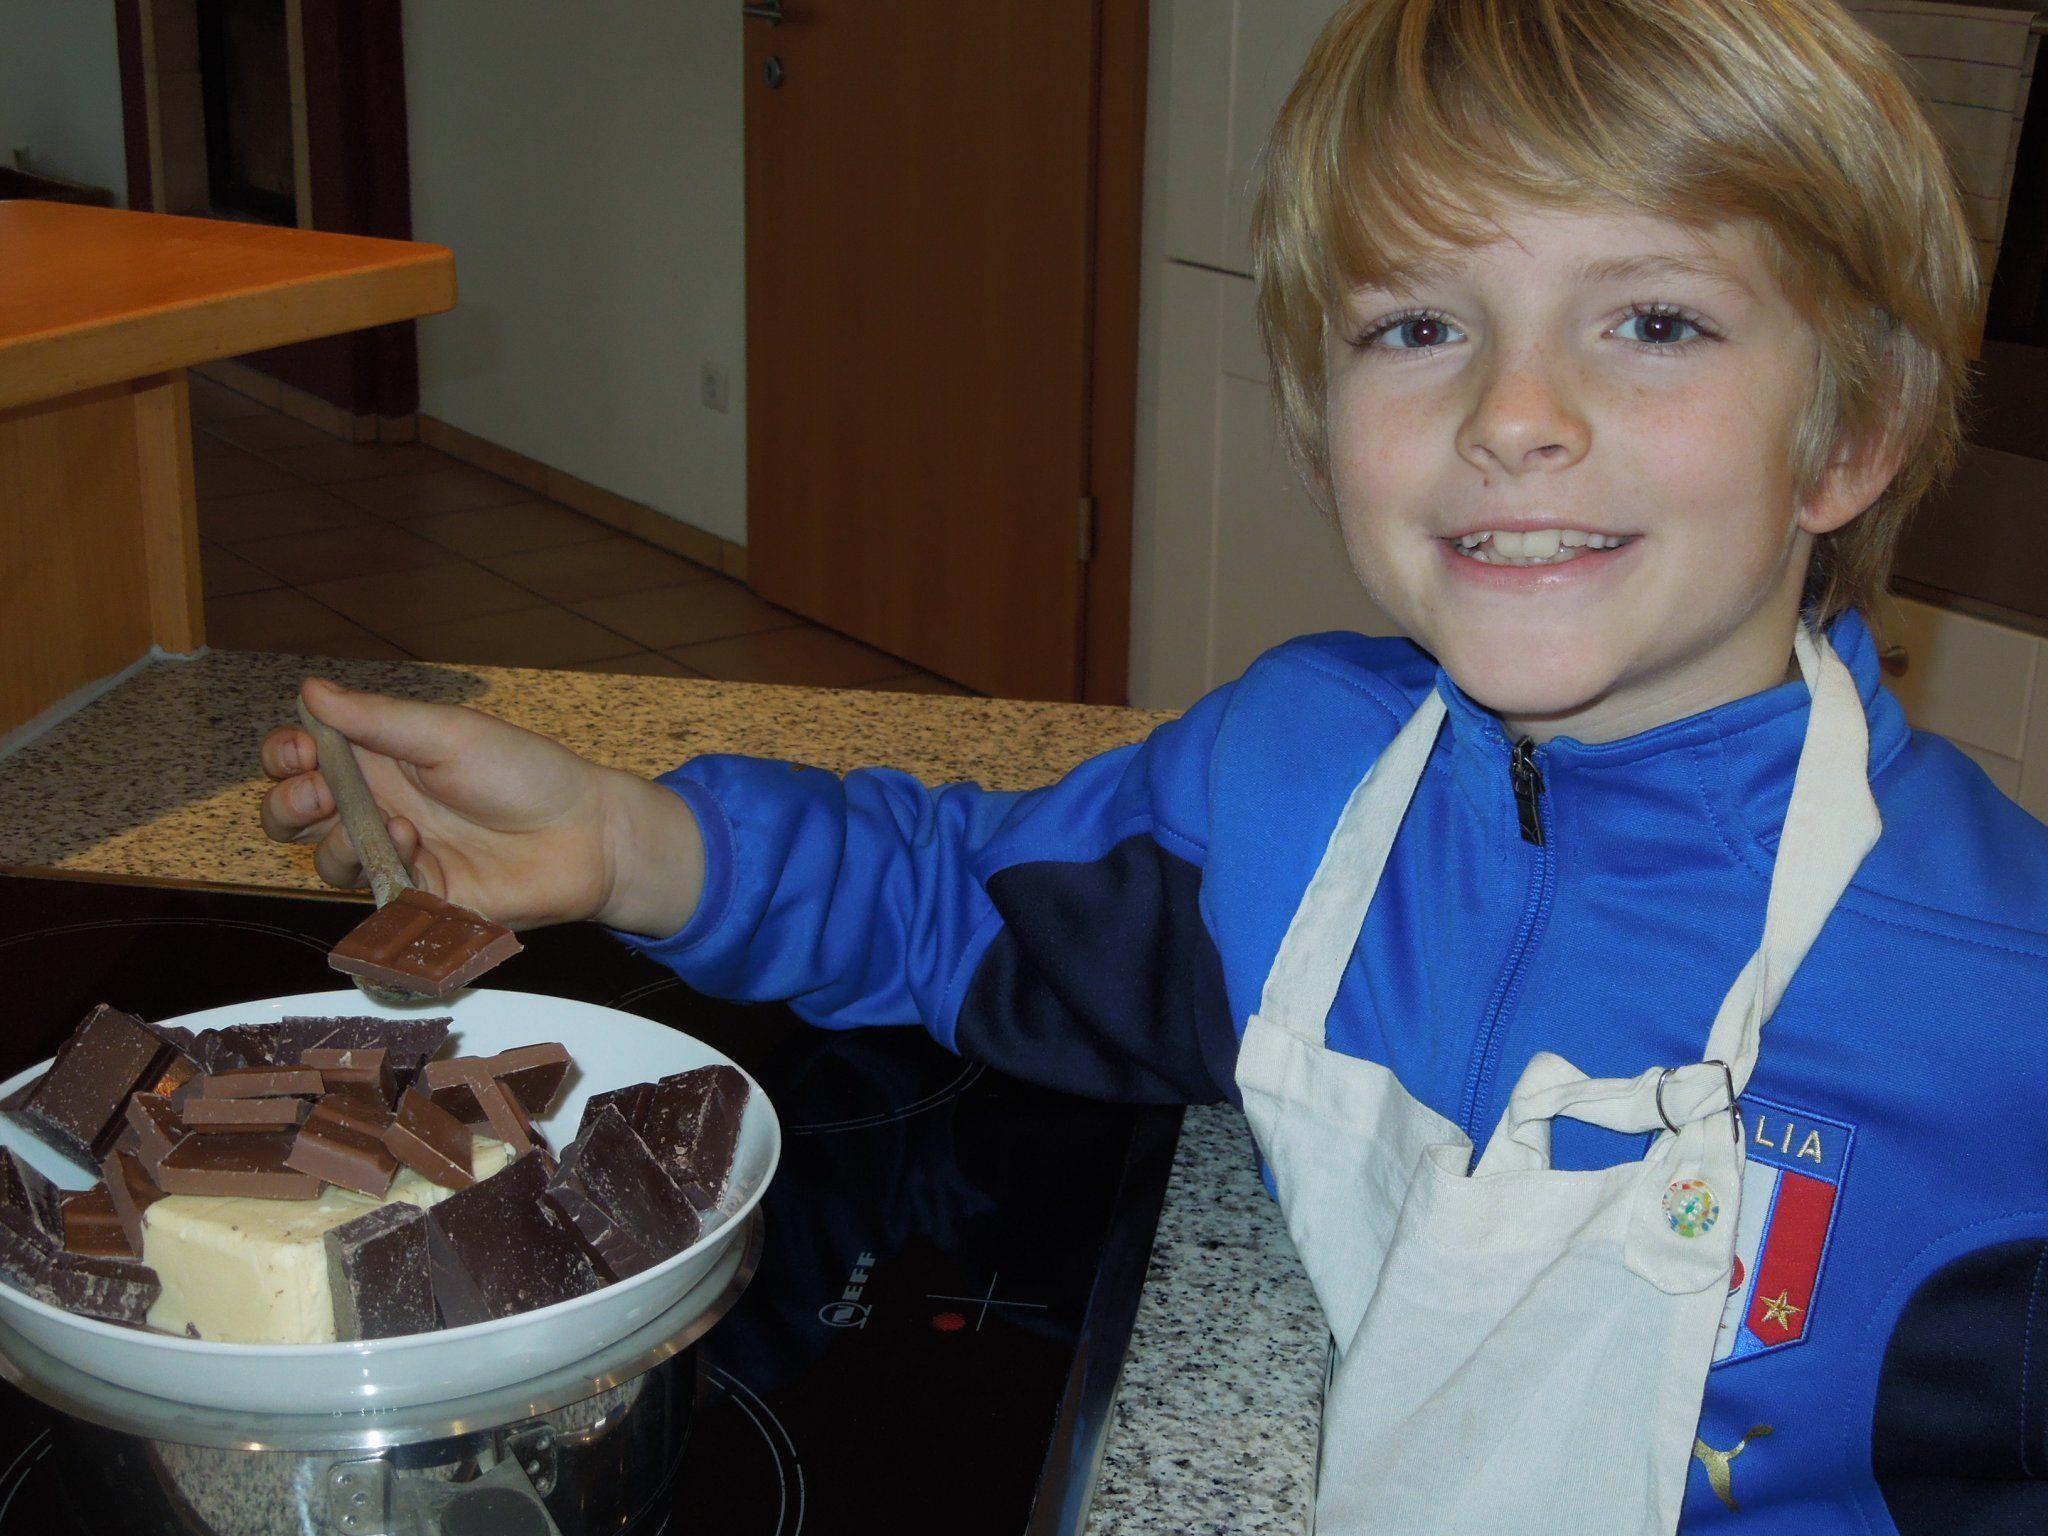 Kinderreporter Elijah verrät noch schnell die einfachsten Keksrezepte zum Weihnachtsfest.